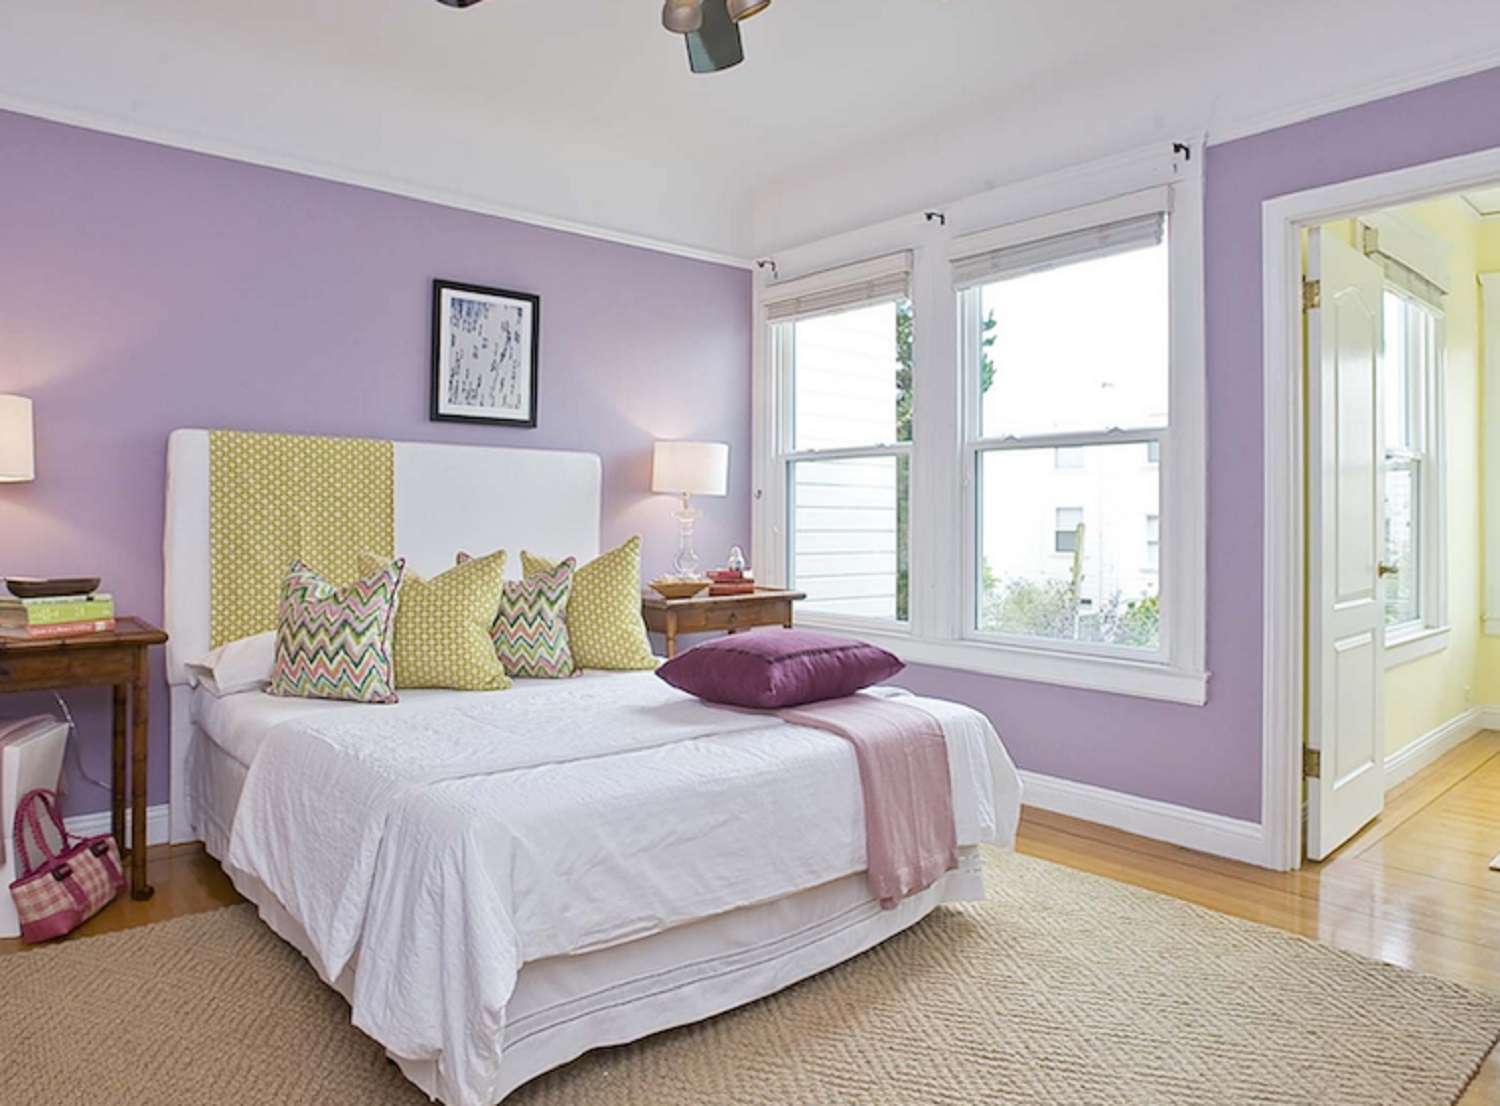 Ein Schlafzimmer in Lavendel und Gelb